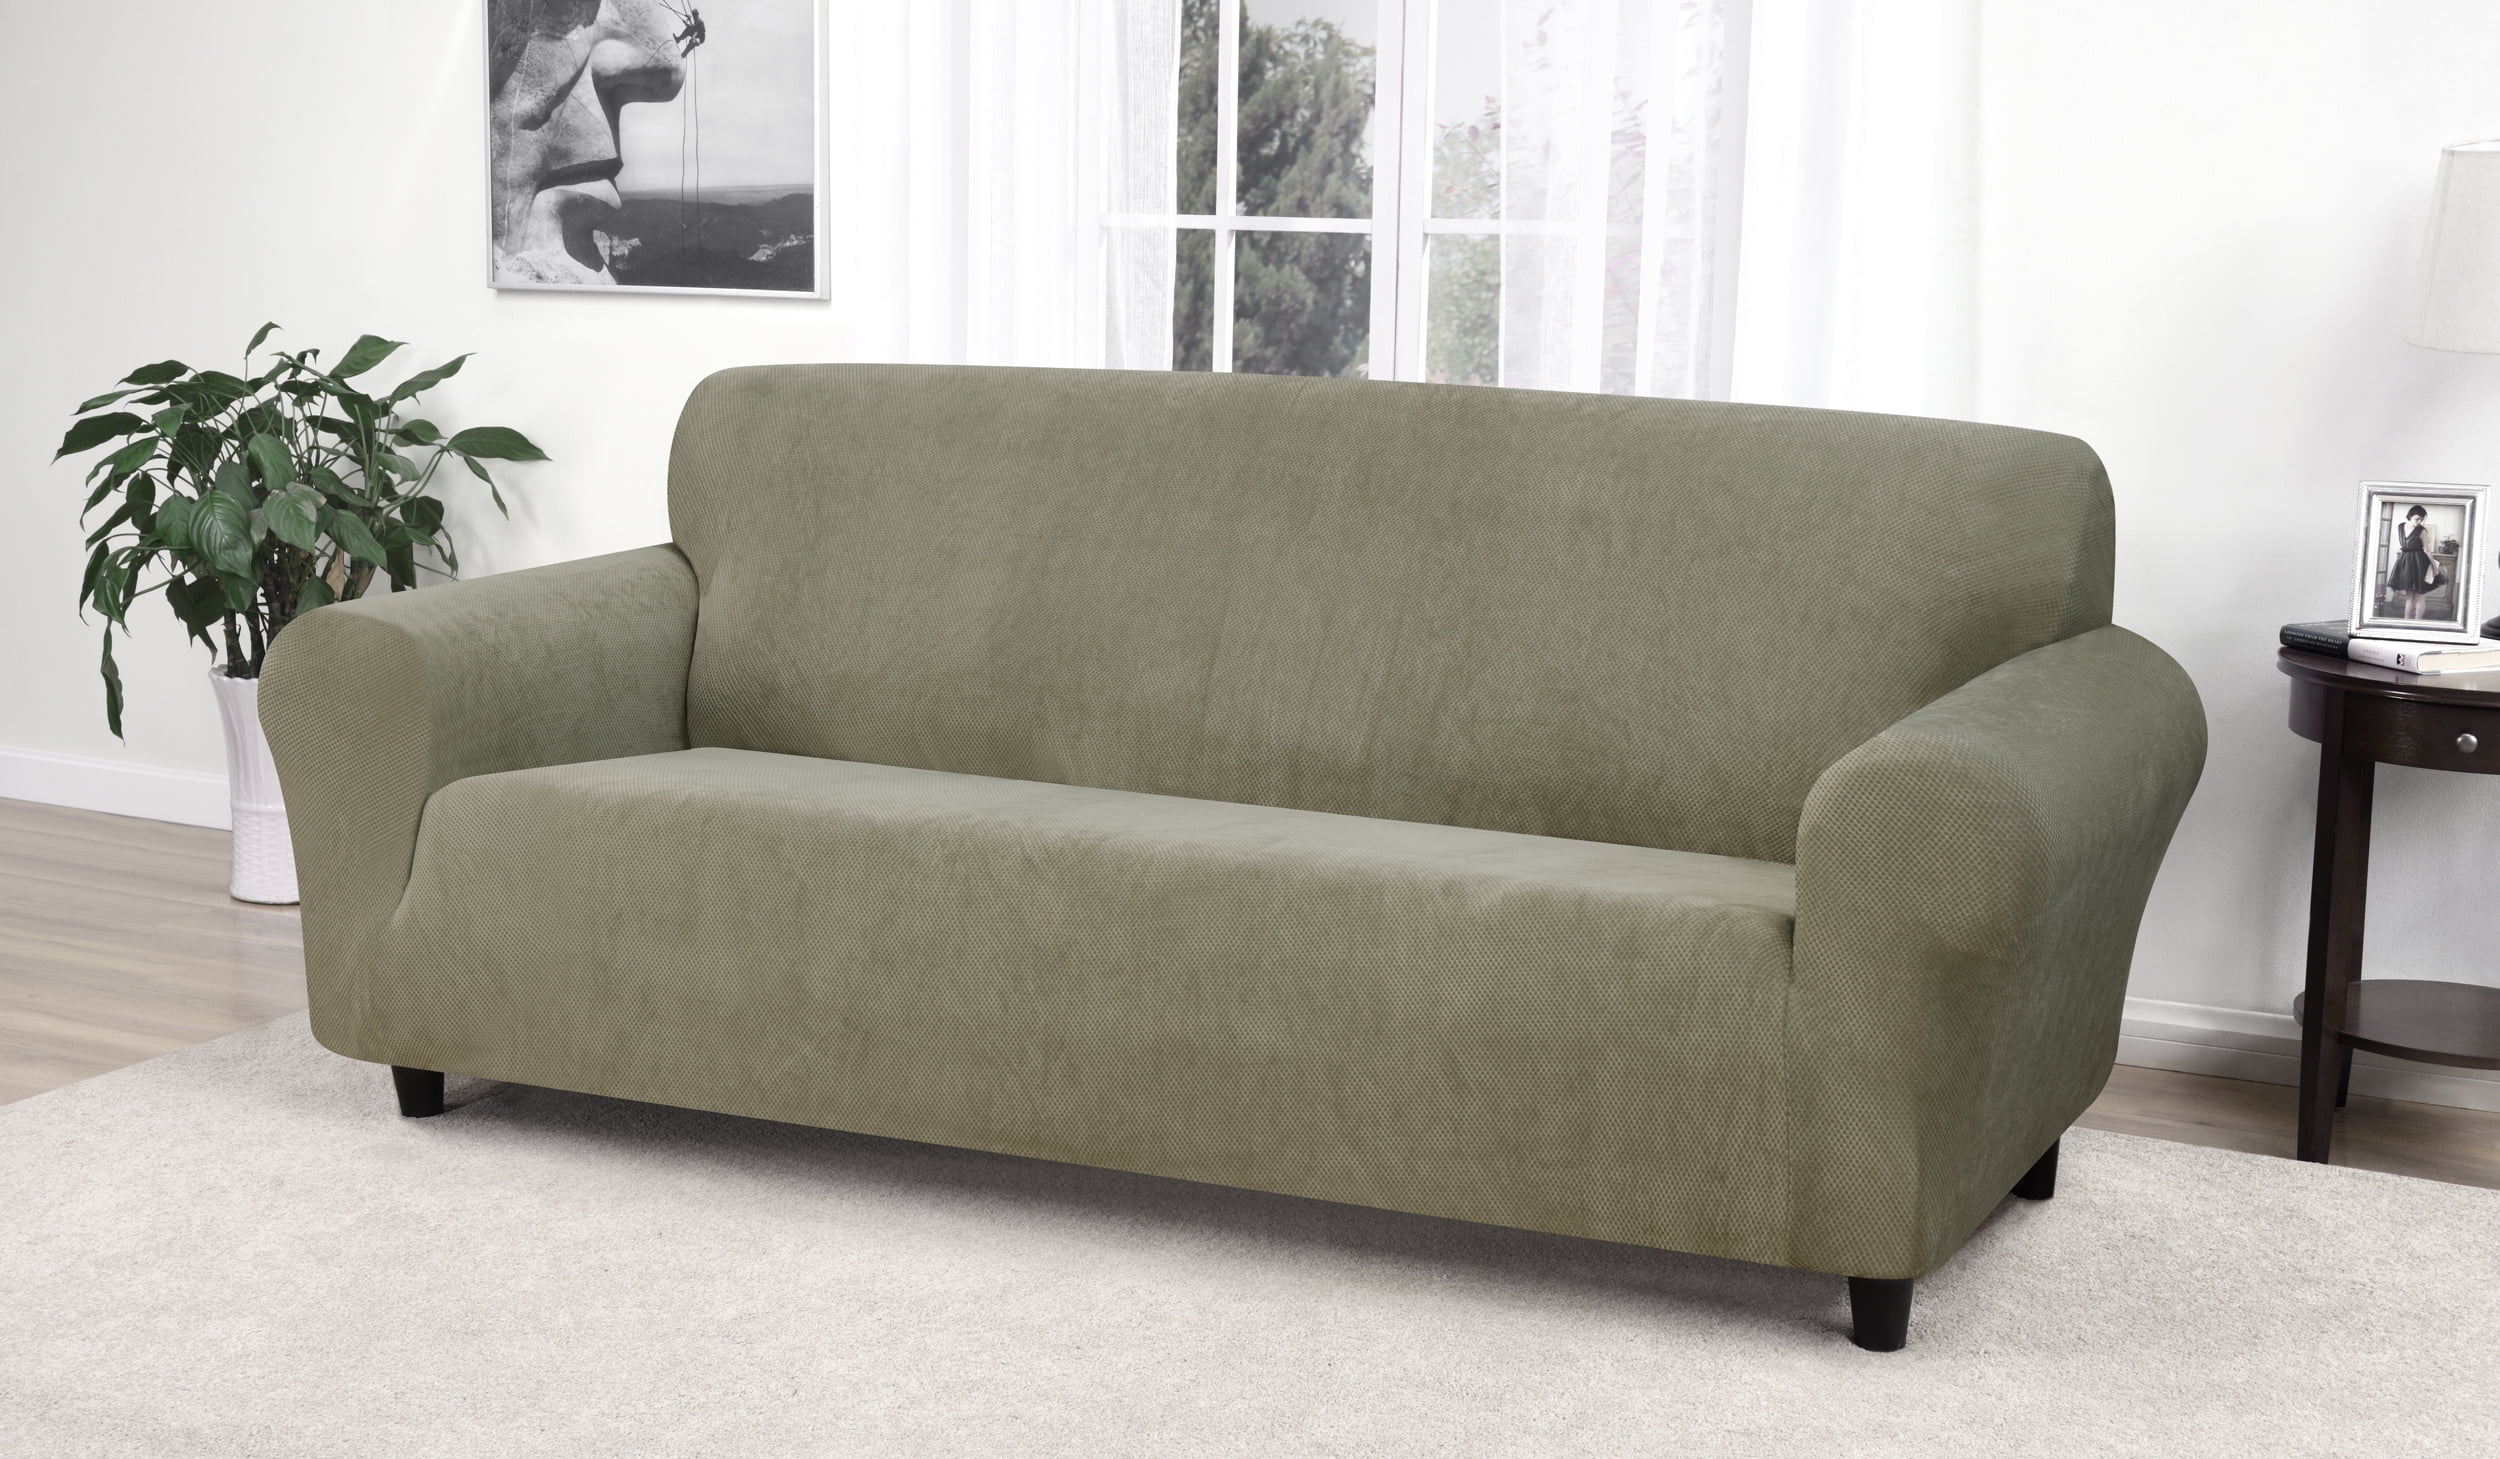 kathy ireland leather sofa set